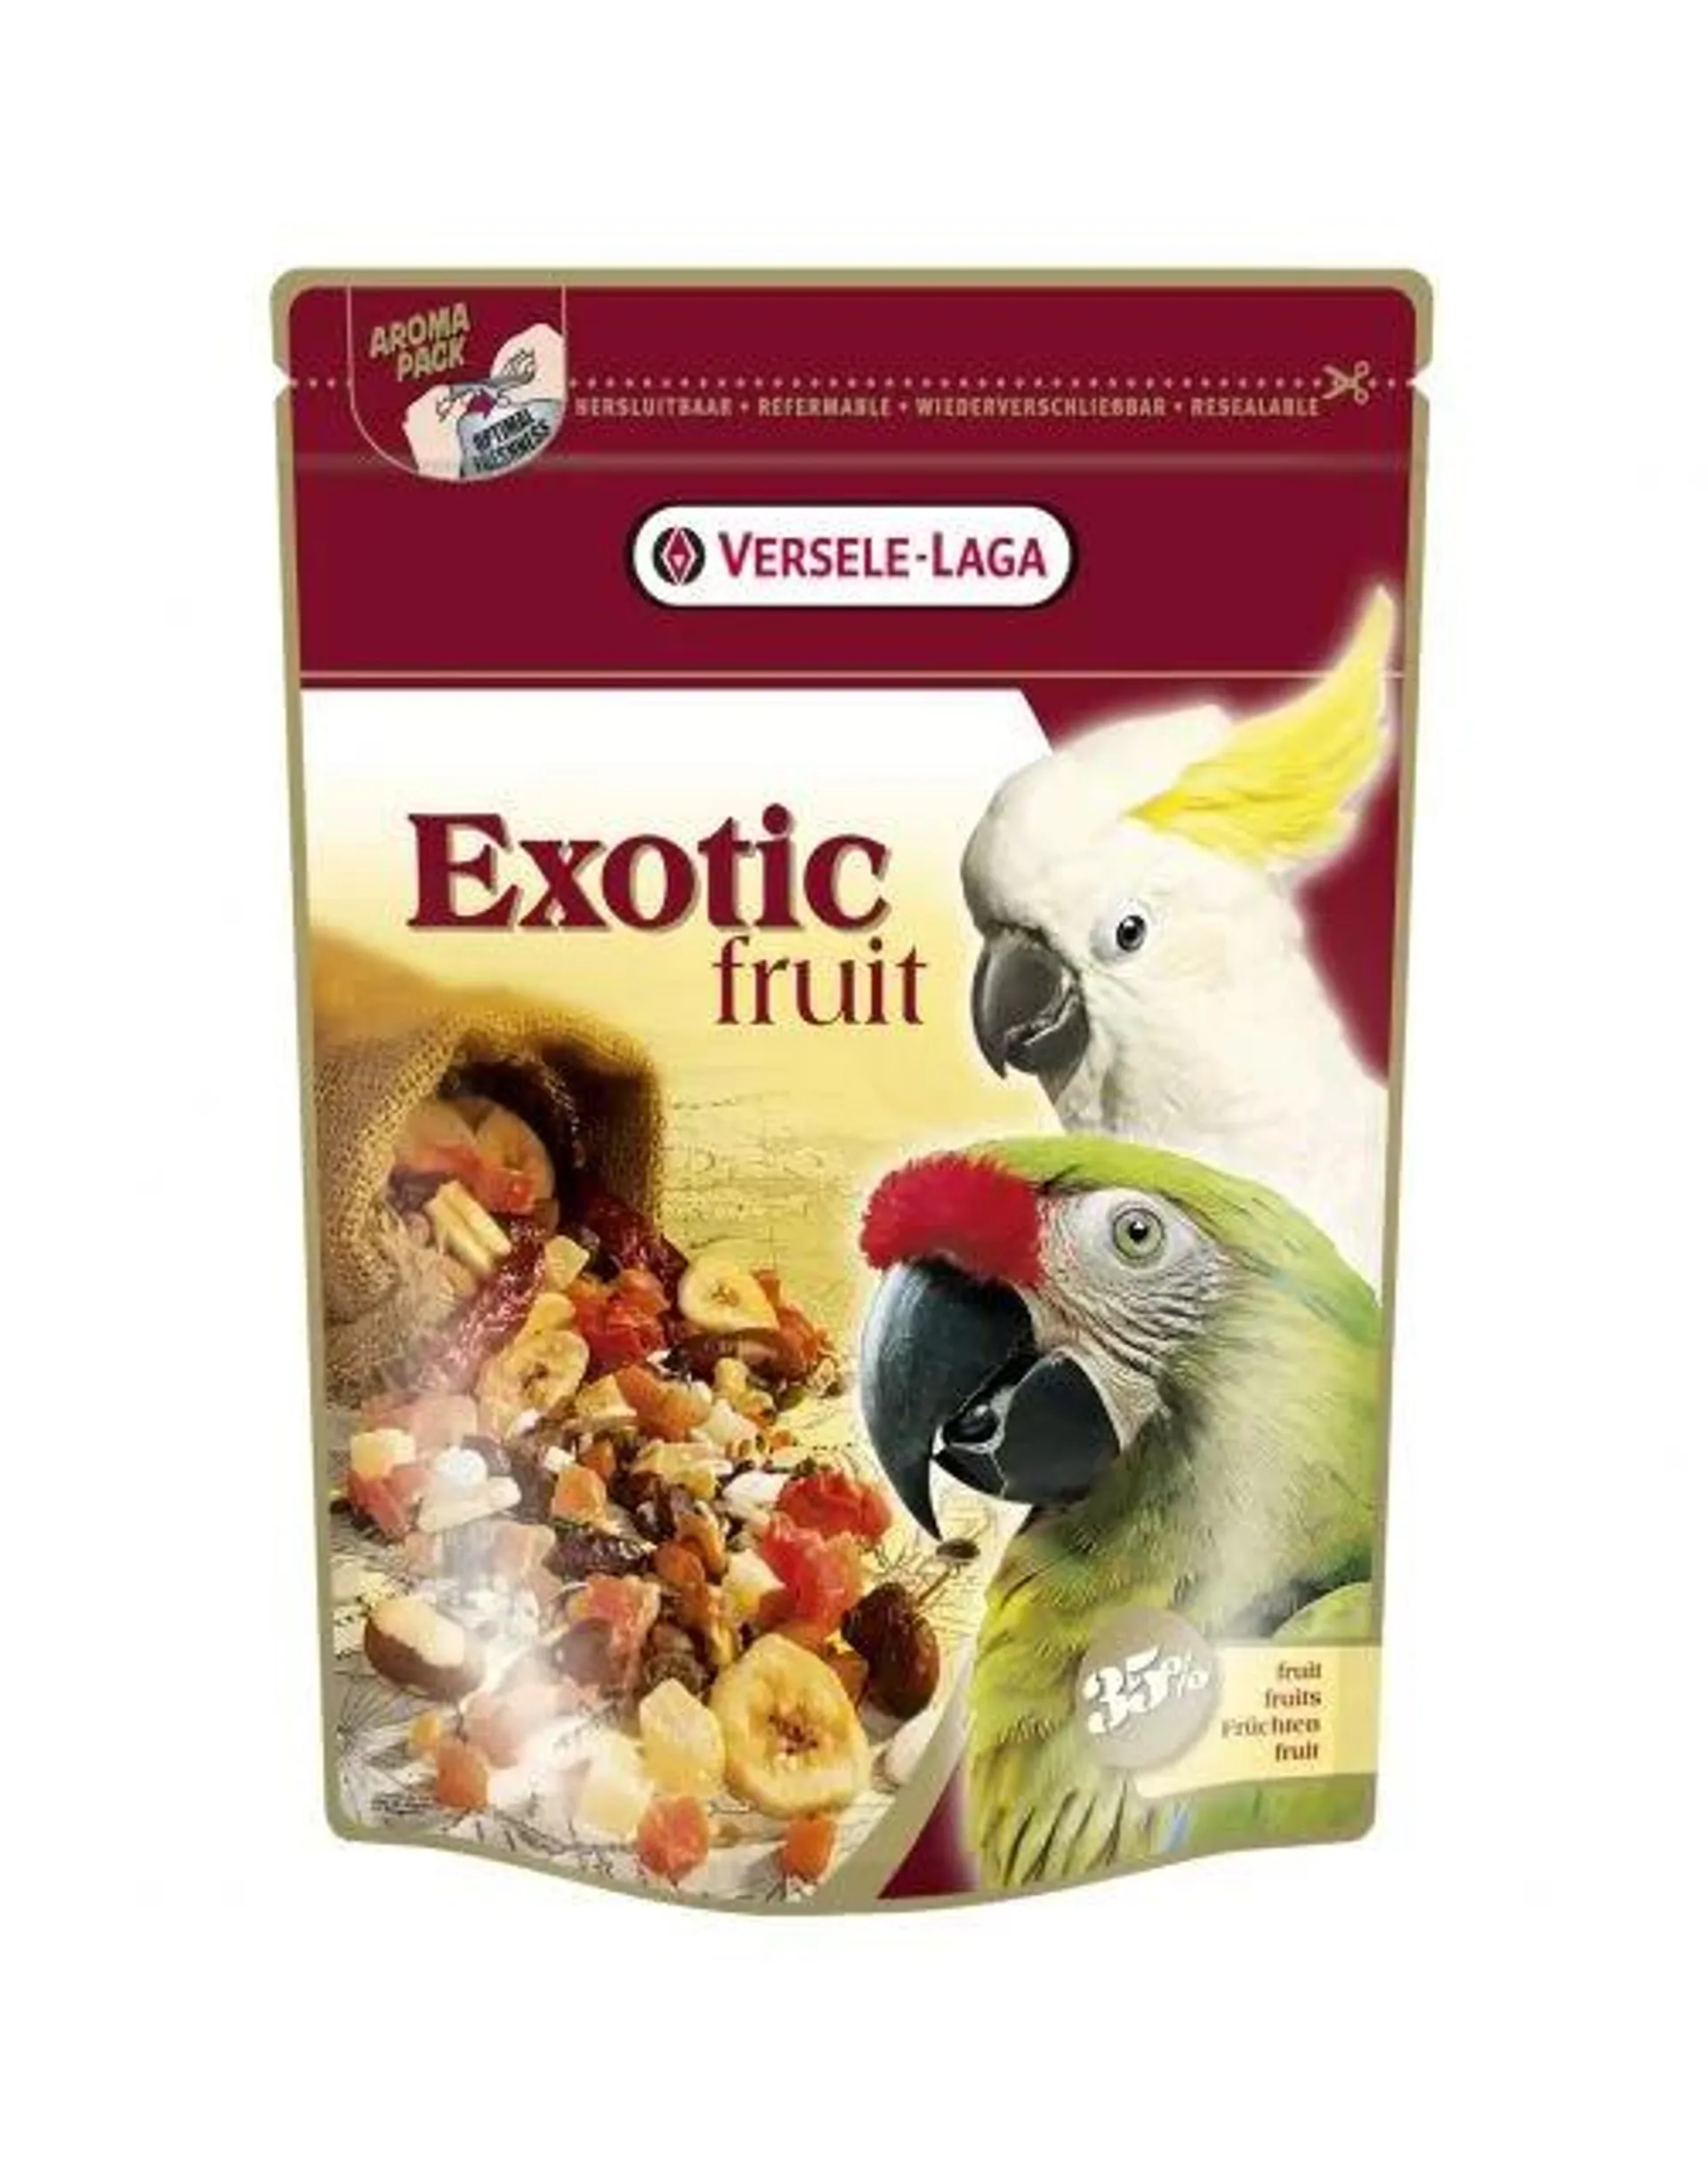 Versele-Laga Prestige Premium Exotic Fruit Papegaai - Vogelvoer